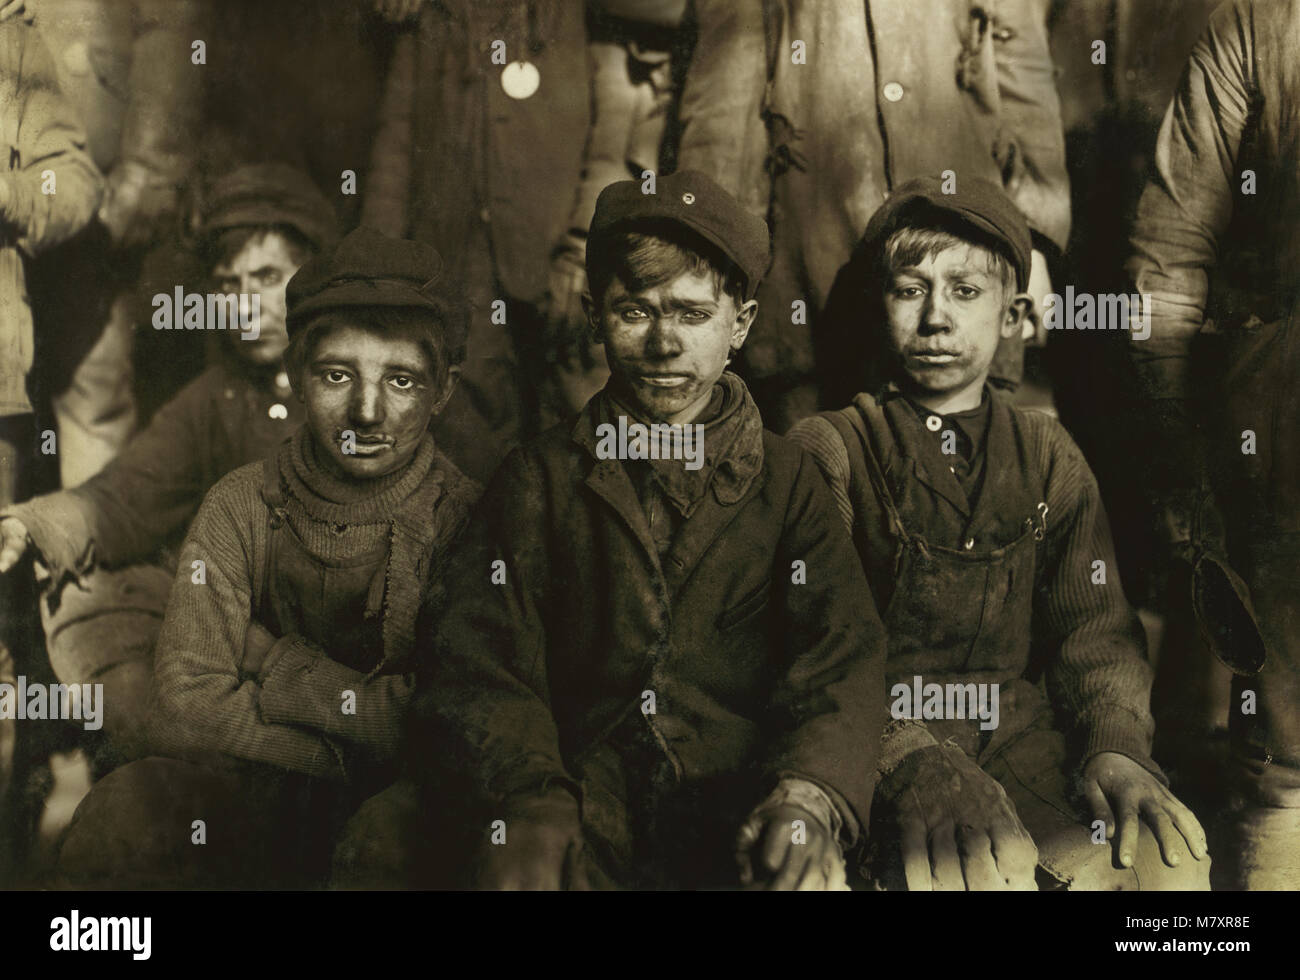 Disjoncteur de groupe, les garçons assis Portrait, Pittston, Pennsylvania, USA, Lewis Hine pour Comité nationale sur le travail des enfants, Janvier 1911 Banque D'Images